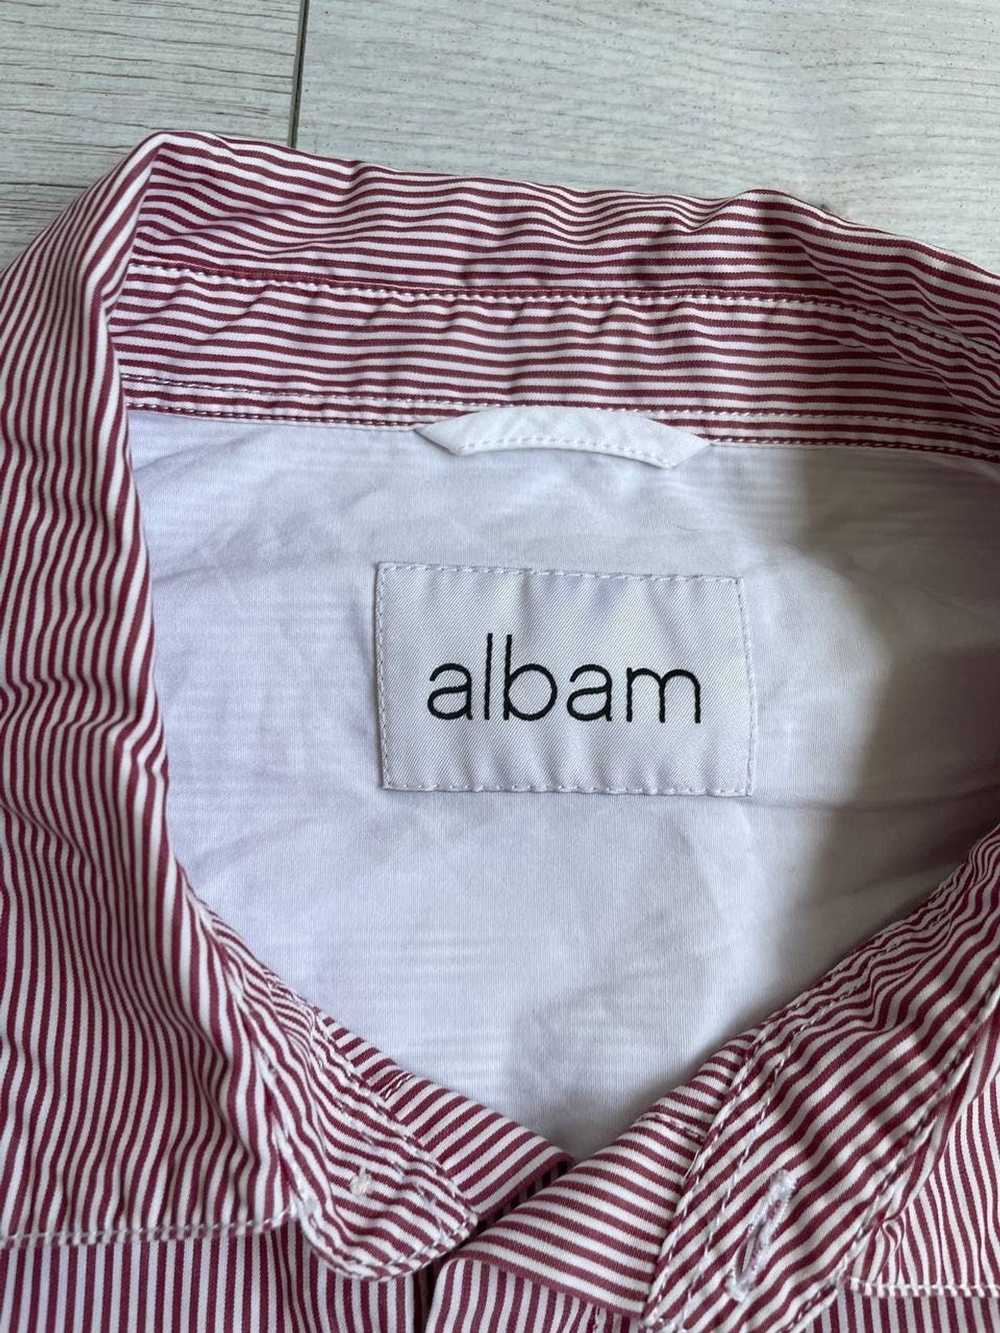 Albam Albam shirt Men Long Sleave Striped Pink Bu… - image 4